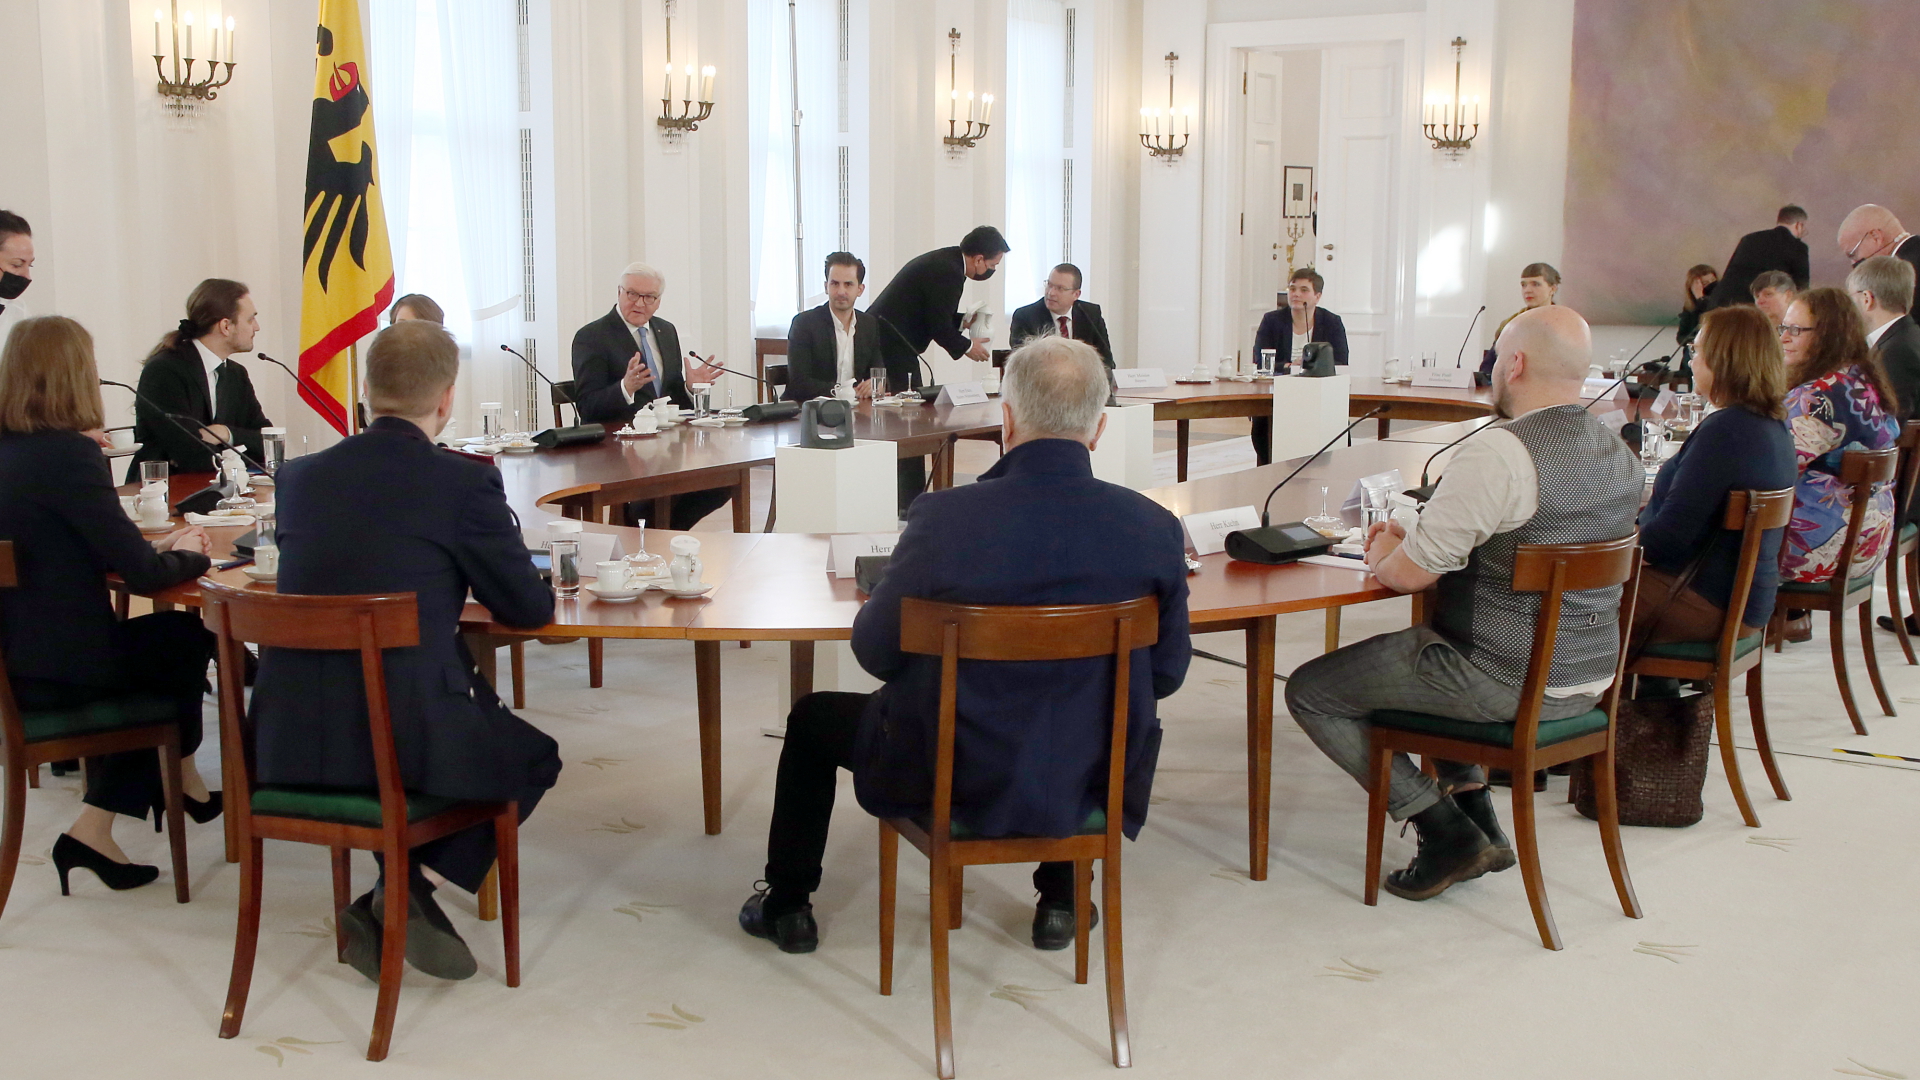 Bundespräsident Steinmeier trifft sich im Schloss Bellevue mit Ehrenamtlichen zu einer Diskussionsrunde. | dpa